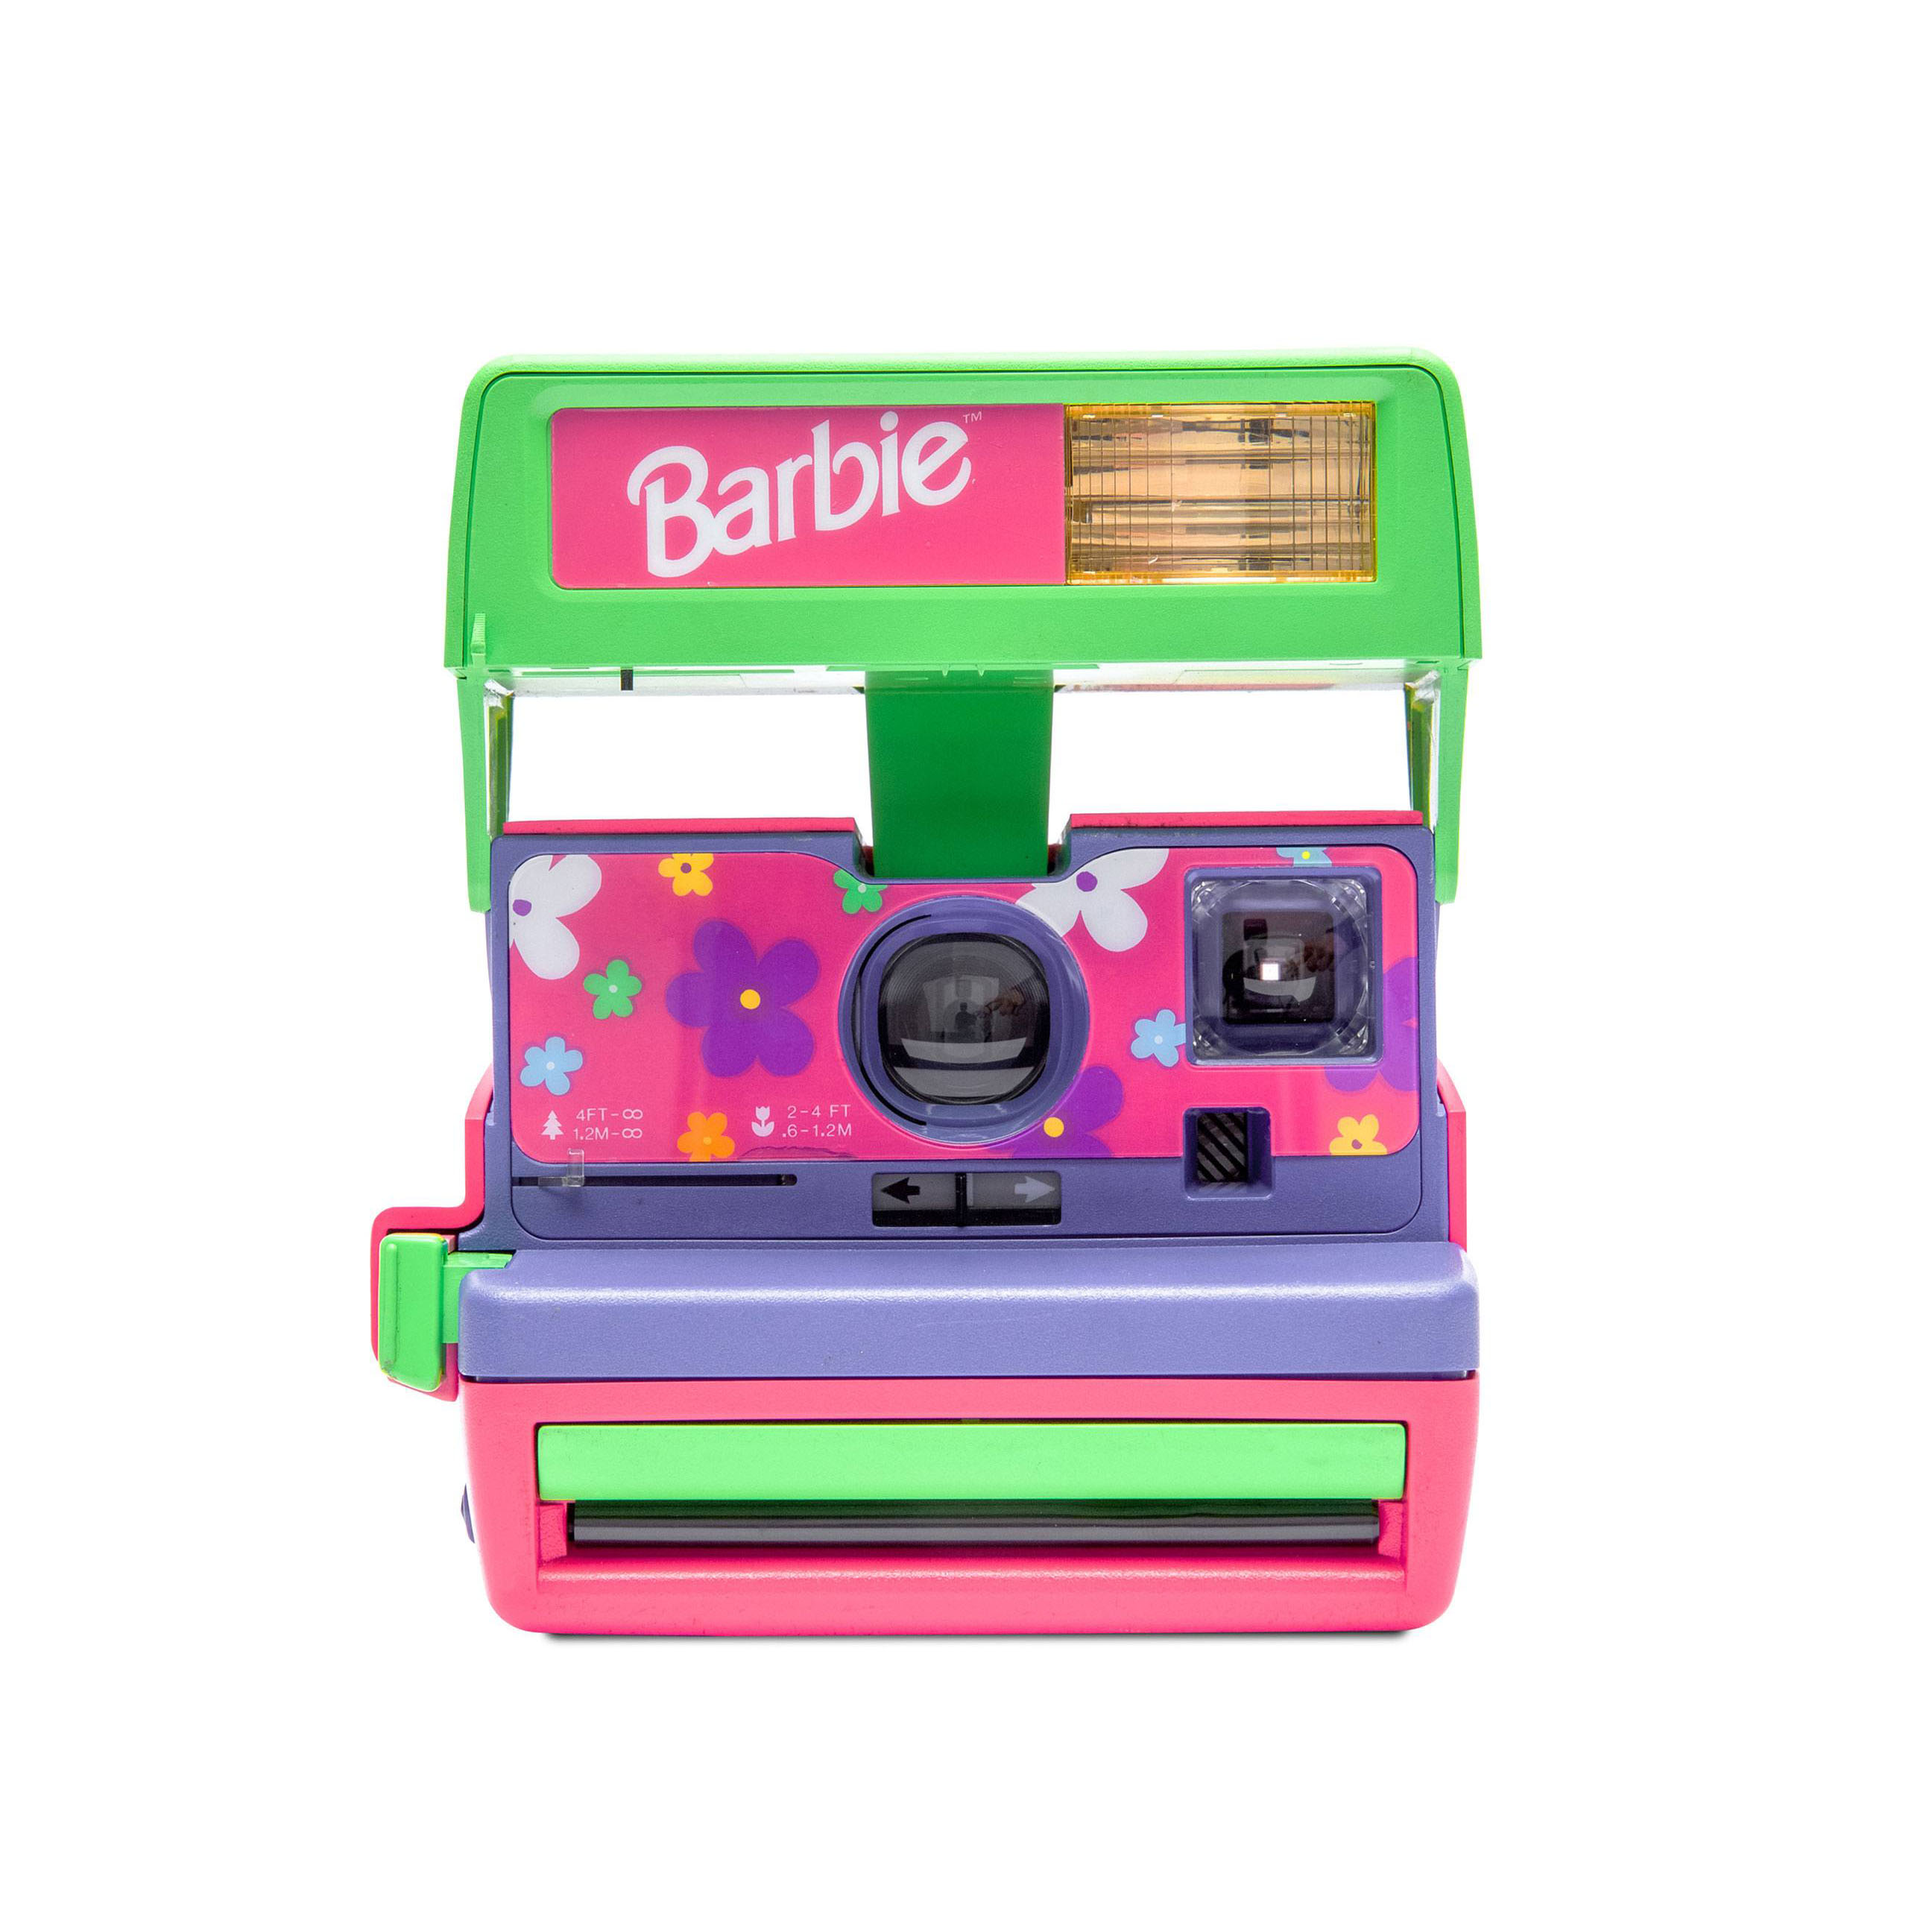 Polaroid 600 Barbie Instant Camera